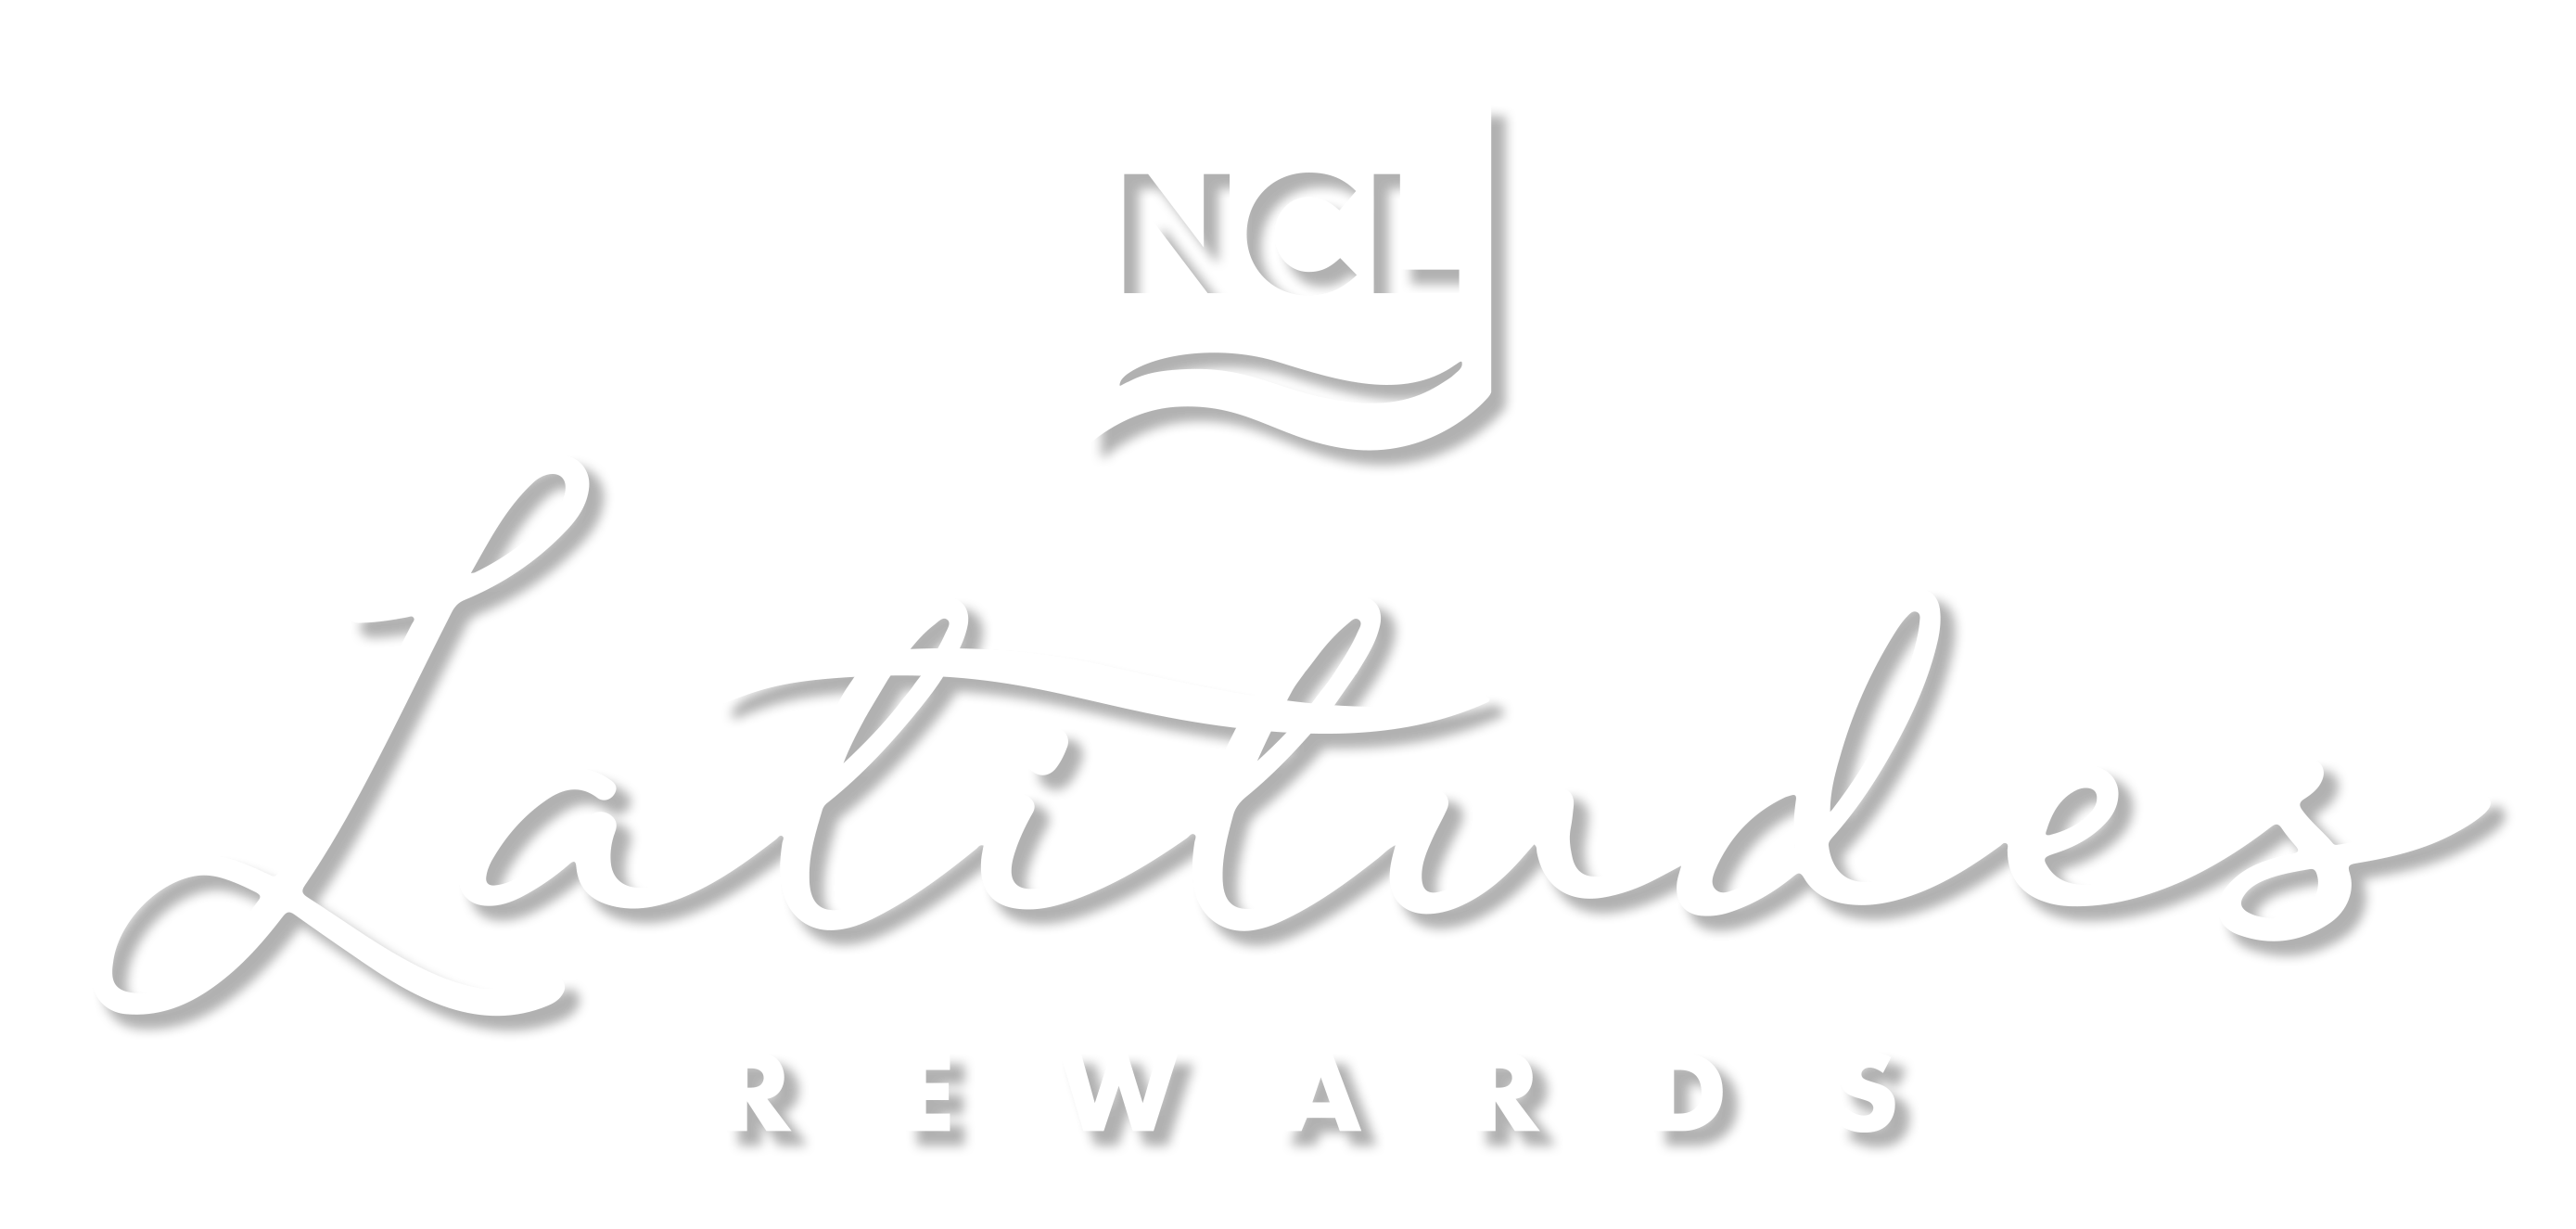 לוגו הטבות לחברי מועדון NCL בצבע לבן